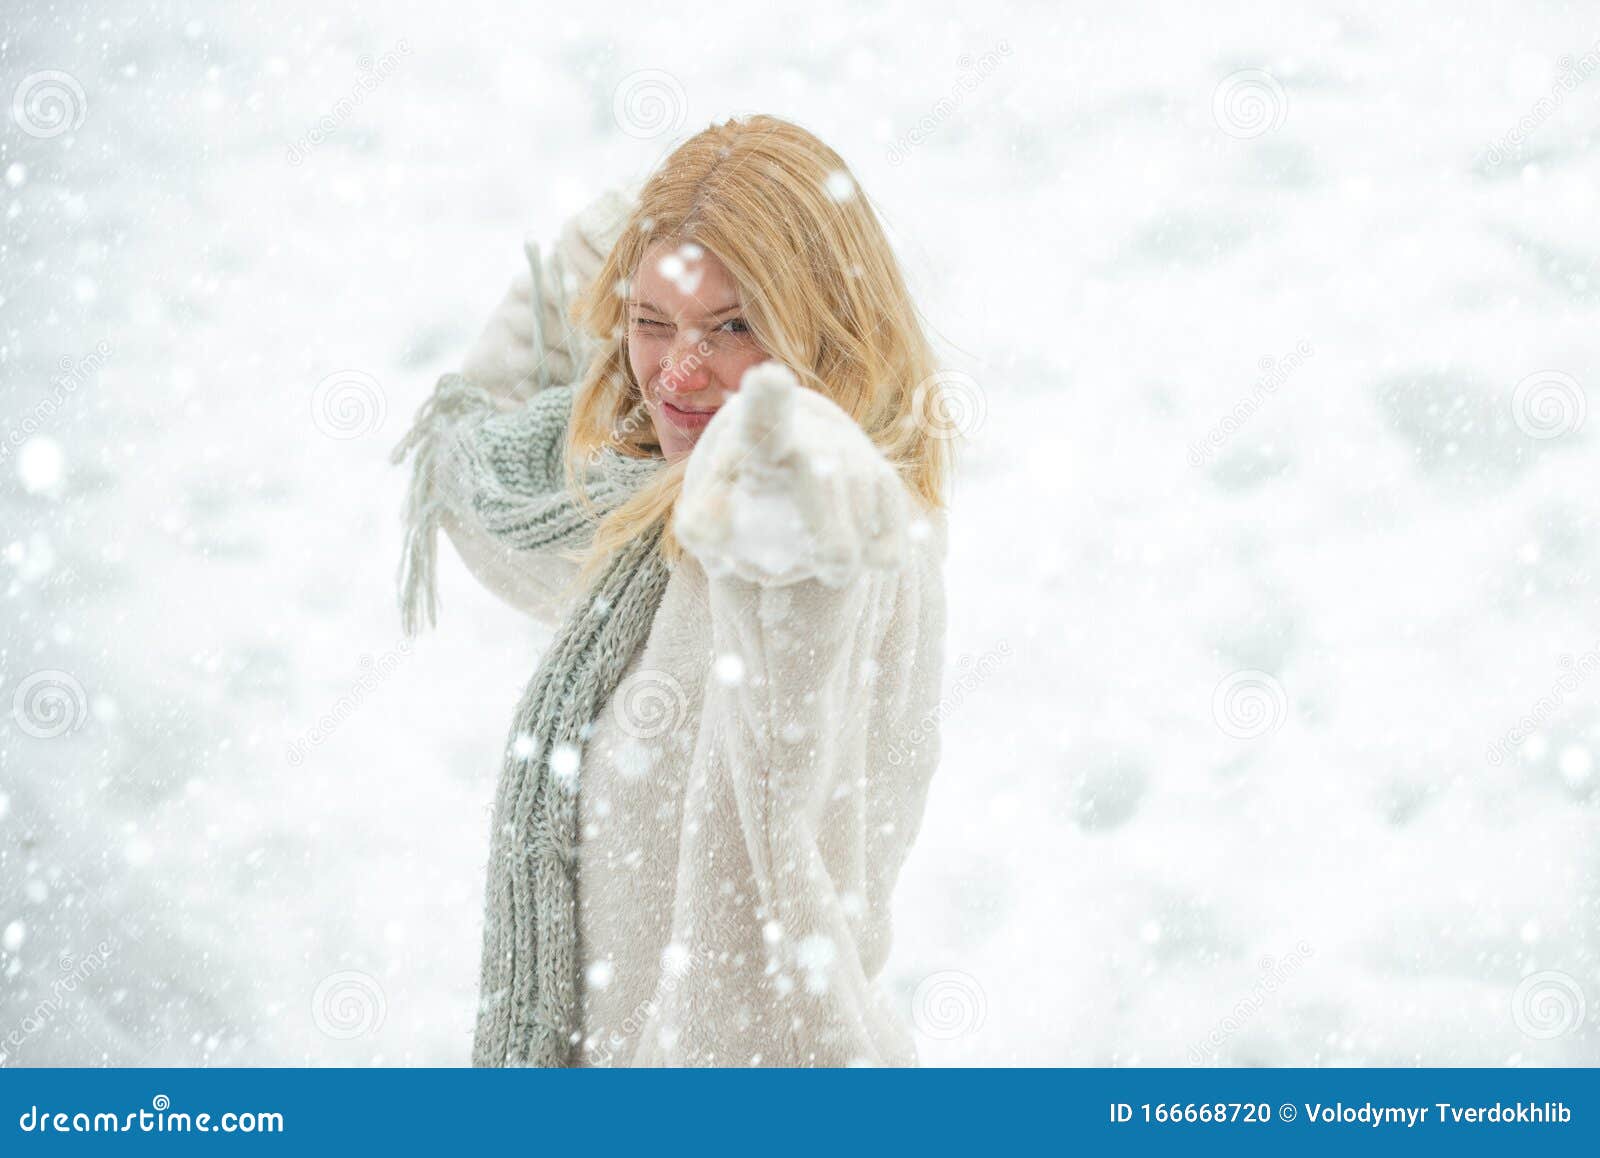 雪中女孩雪球大战雪中人一个年轻女子在雪地里试图温暖自己的画像 欢快的美人 库存照片 图片包括有英国 欧洲